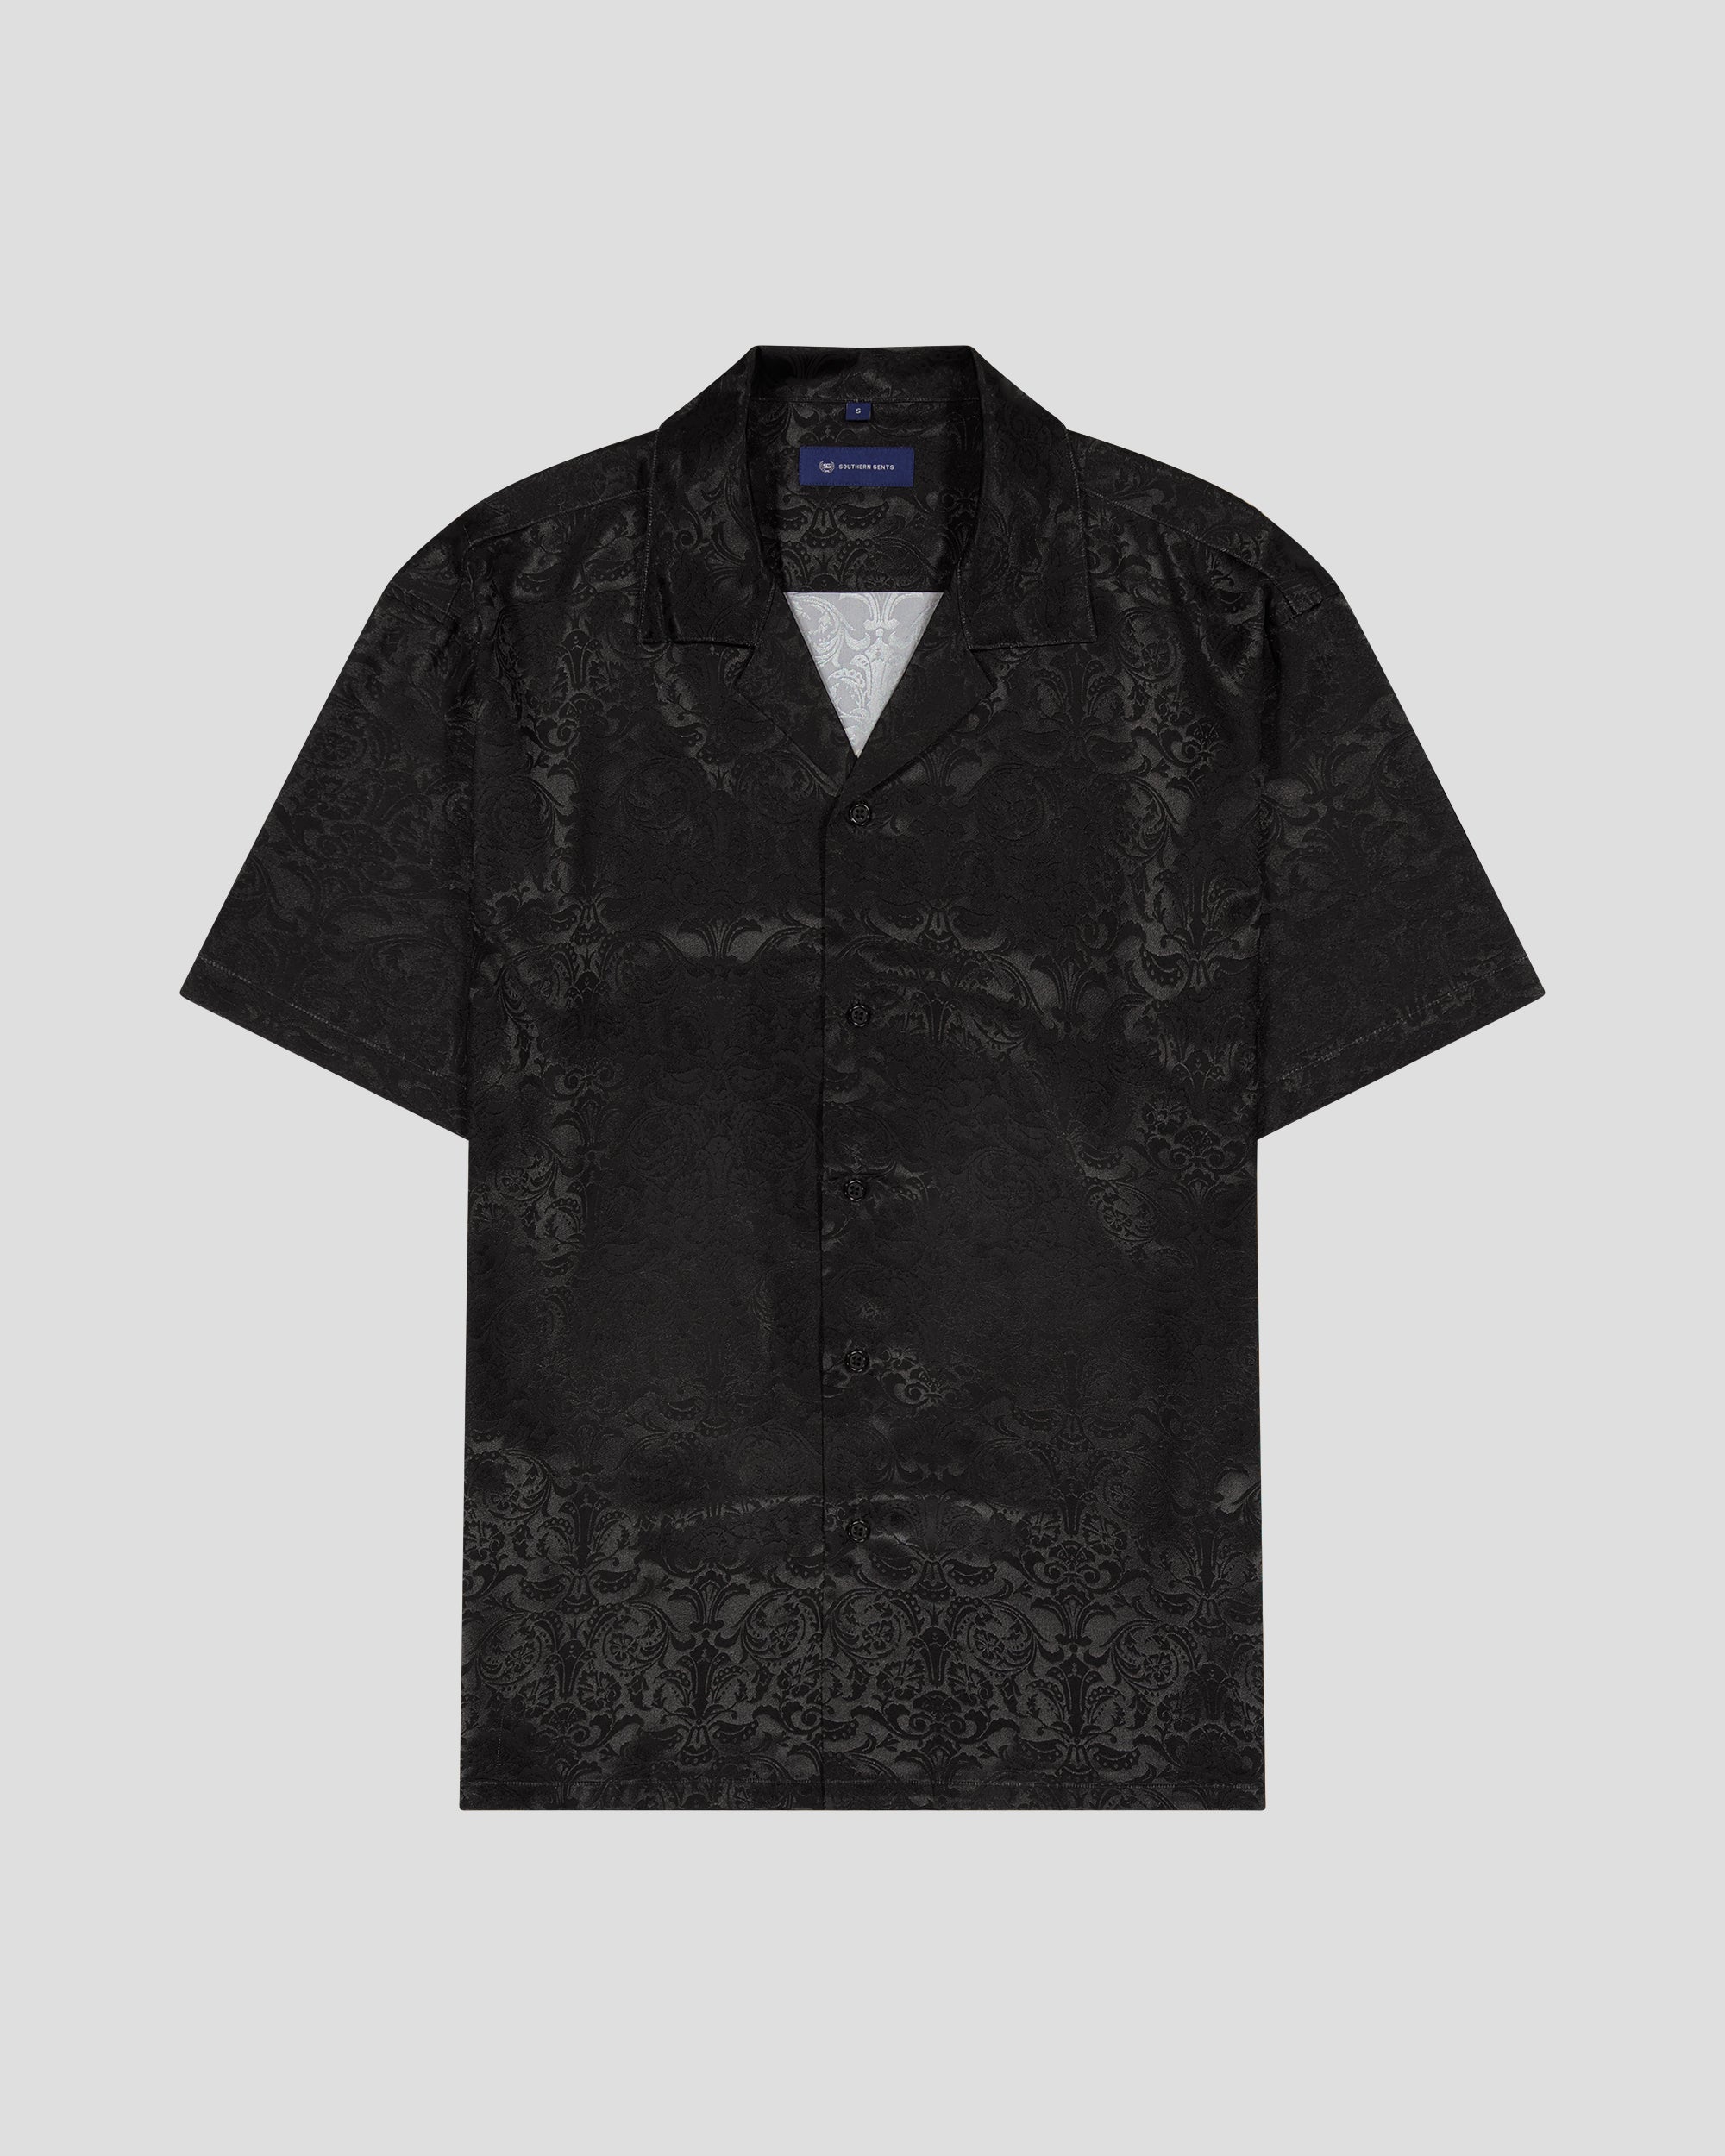 Men's Mandarin Collar Shirt - Simon Jersey